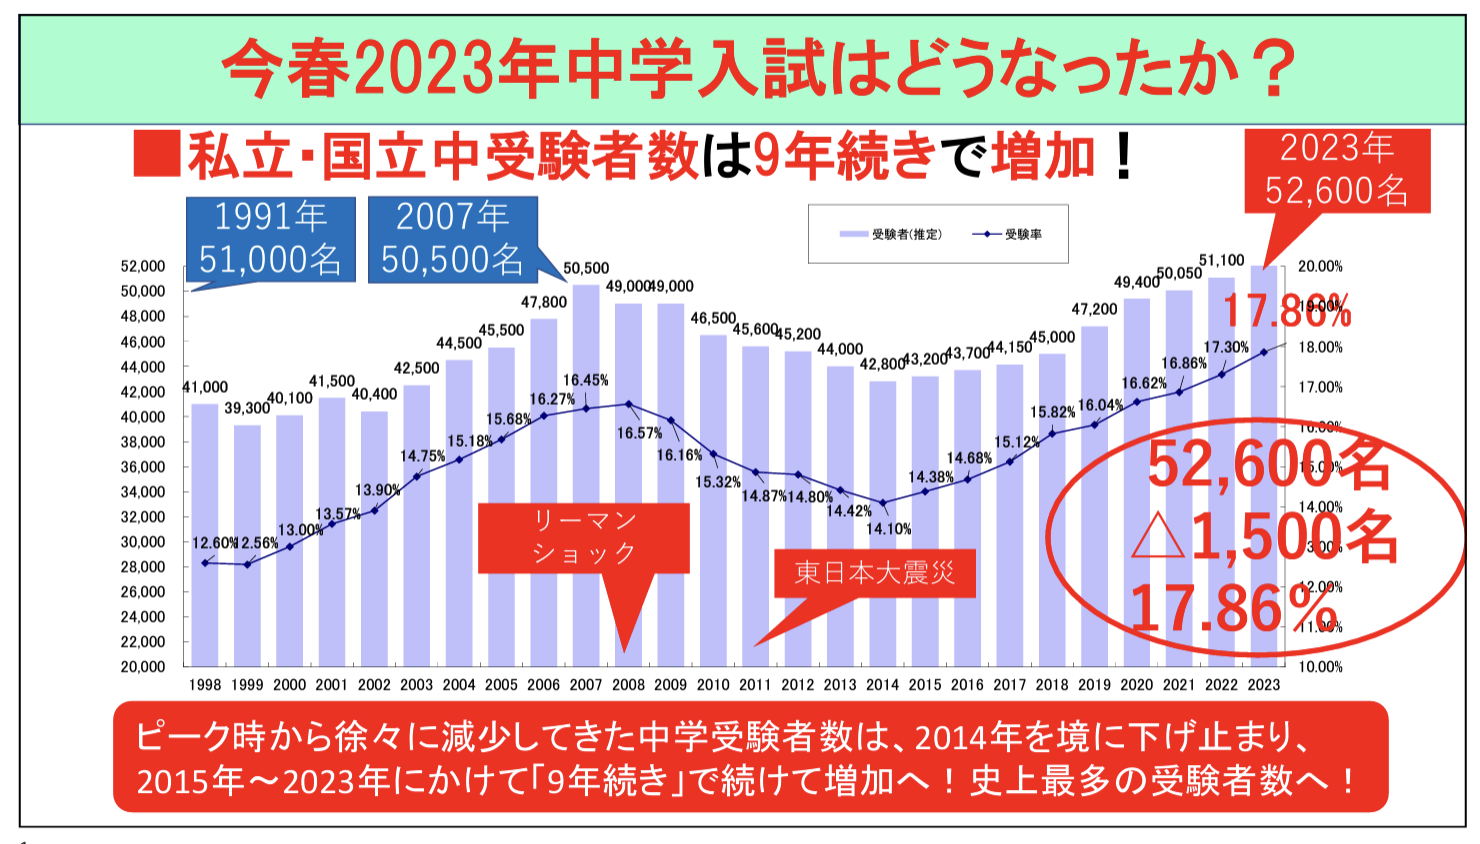 【2023中学入試】受験者数が過去最多（9年連続増加）